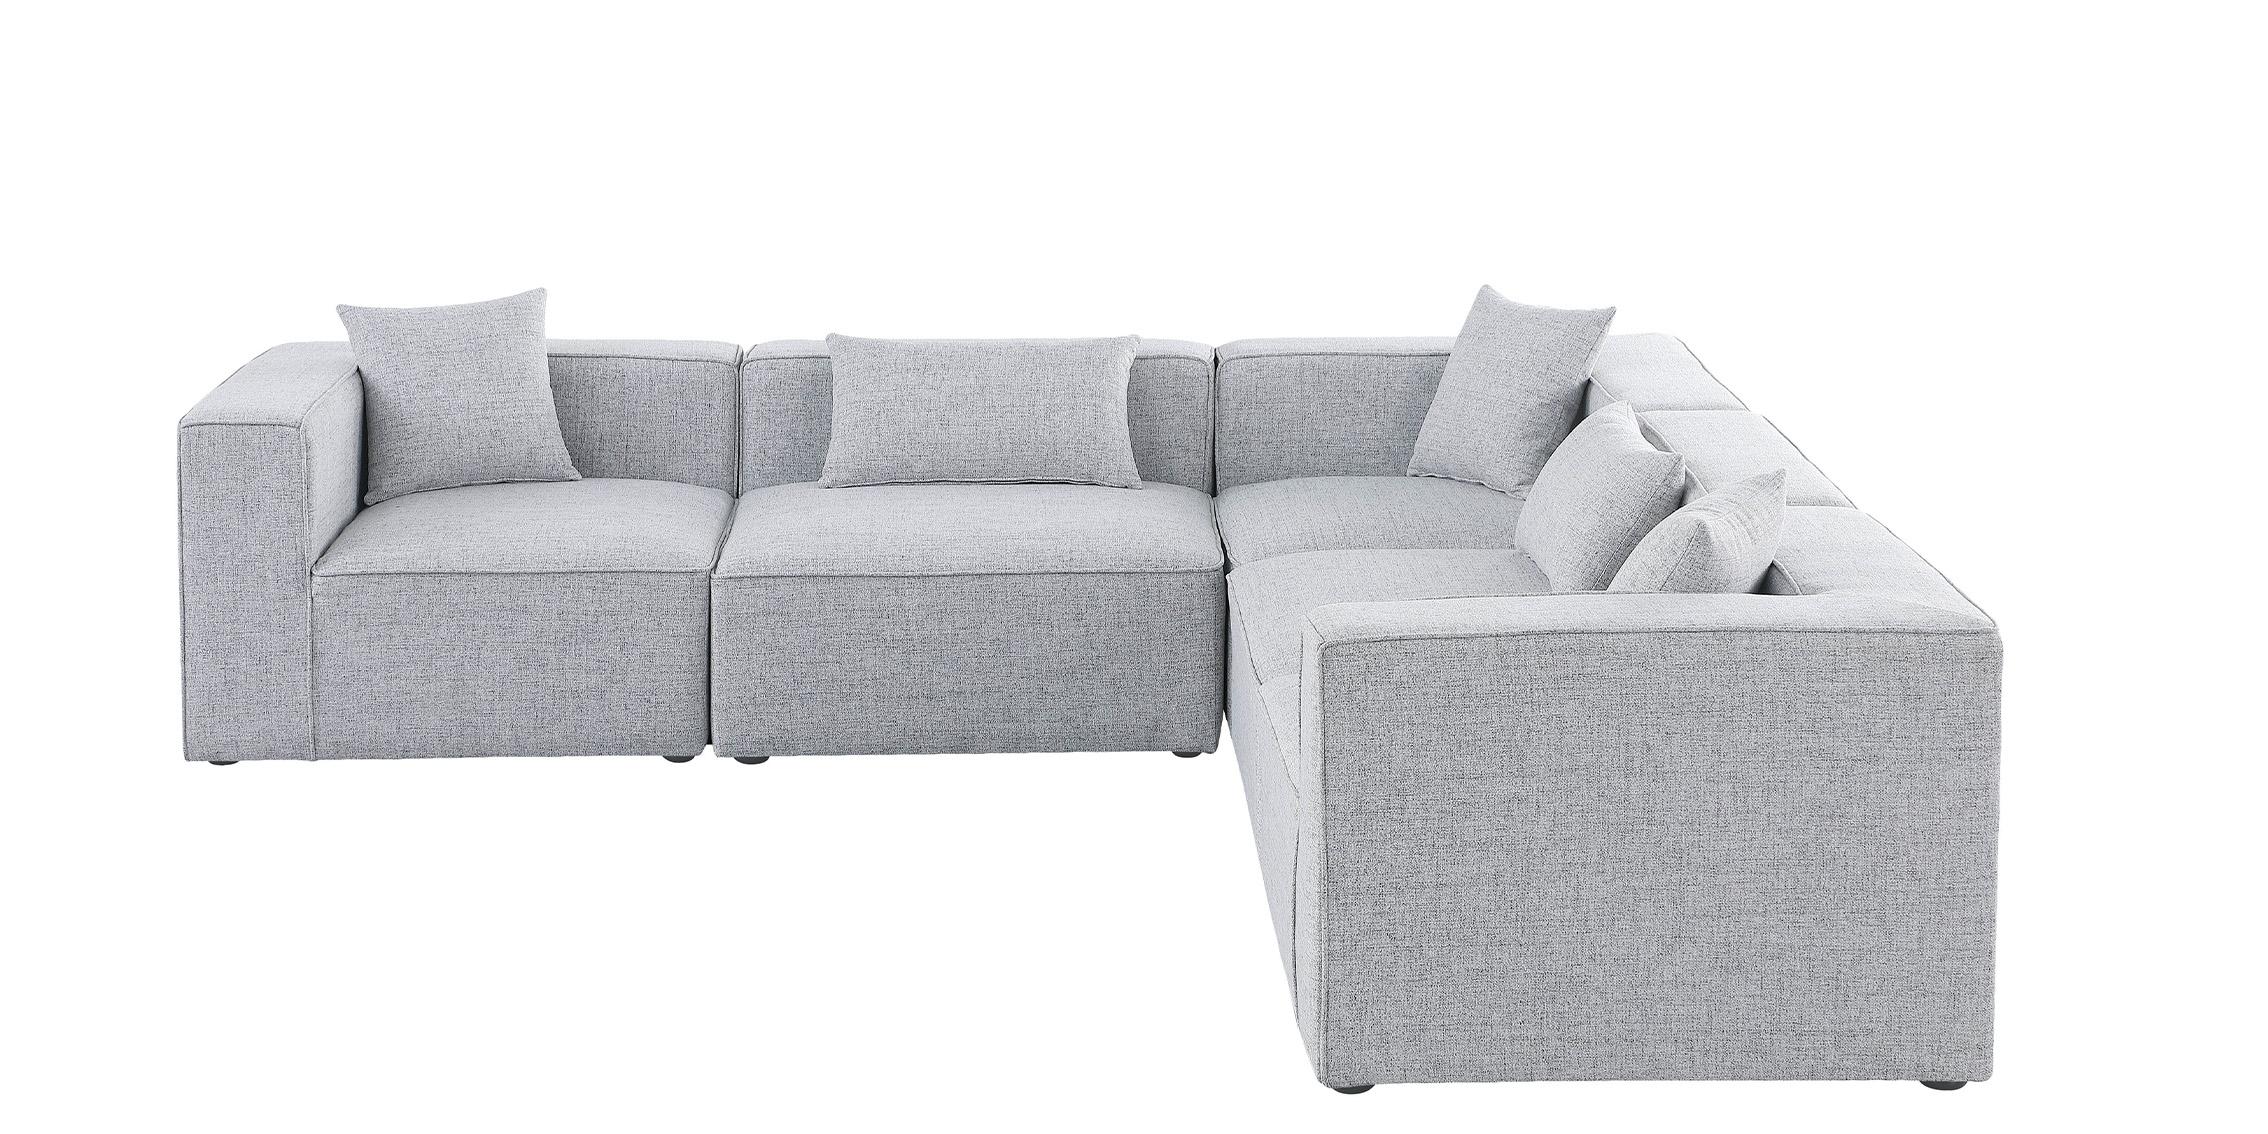 

    
Meridian Furniture CUBE 630Grey-Sec5C Modular Sectional Sofa Gray 630Grey-Sec5C
